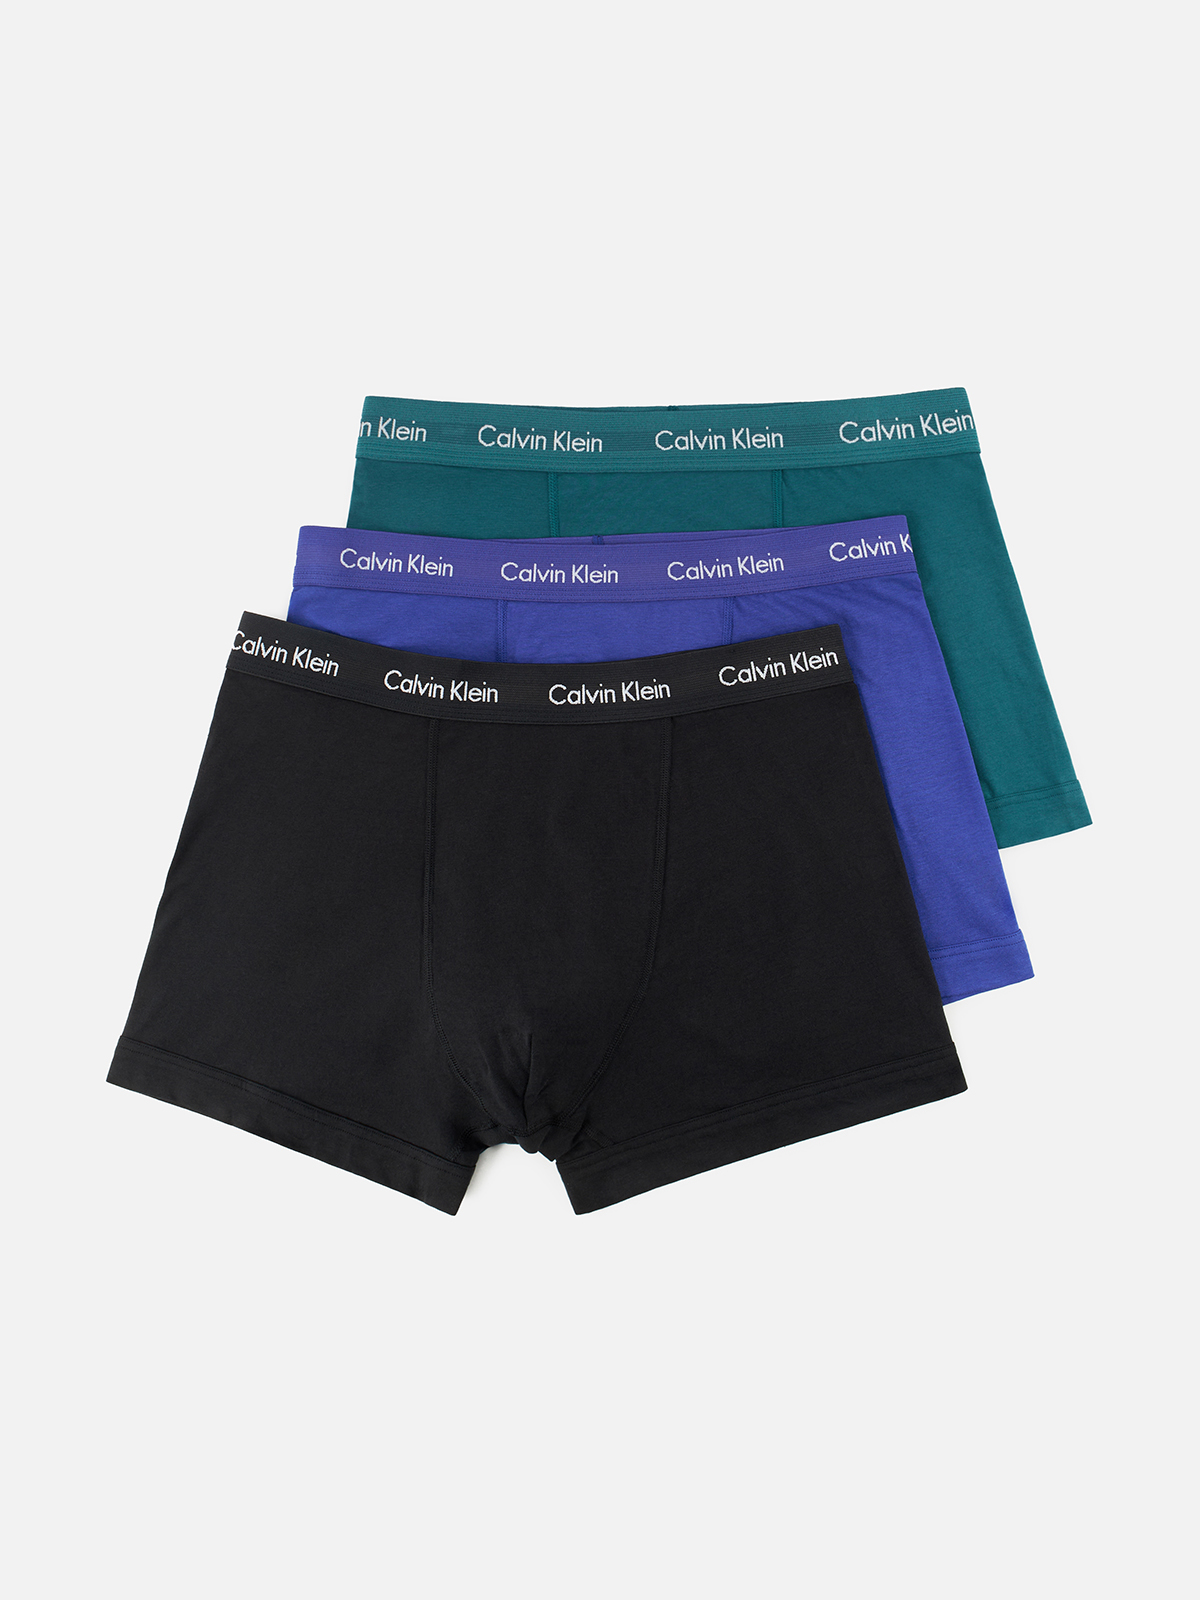 Комплект трусов мужских Calvin Klein Underwear 0000U2662G синих, зеленых, черных XL